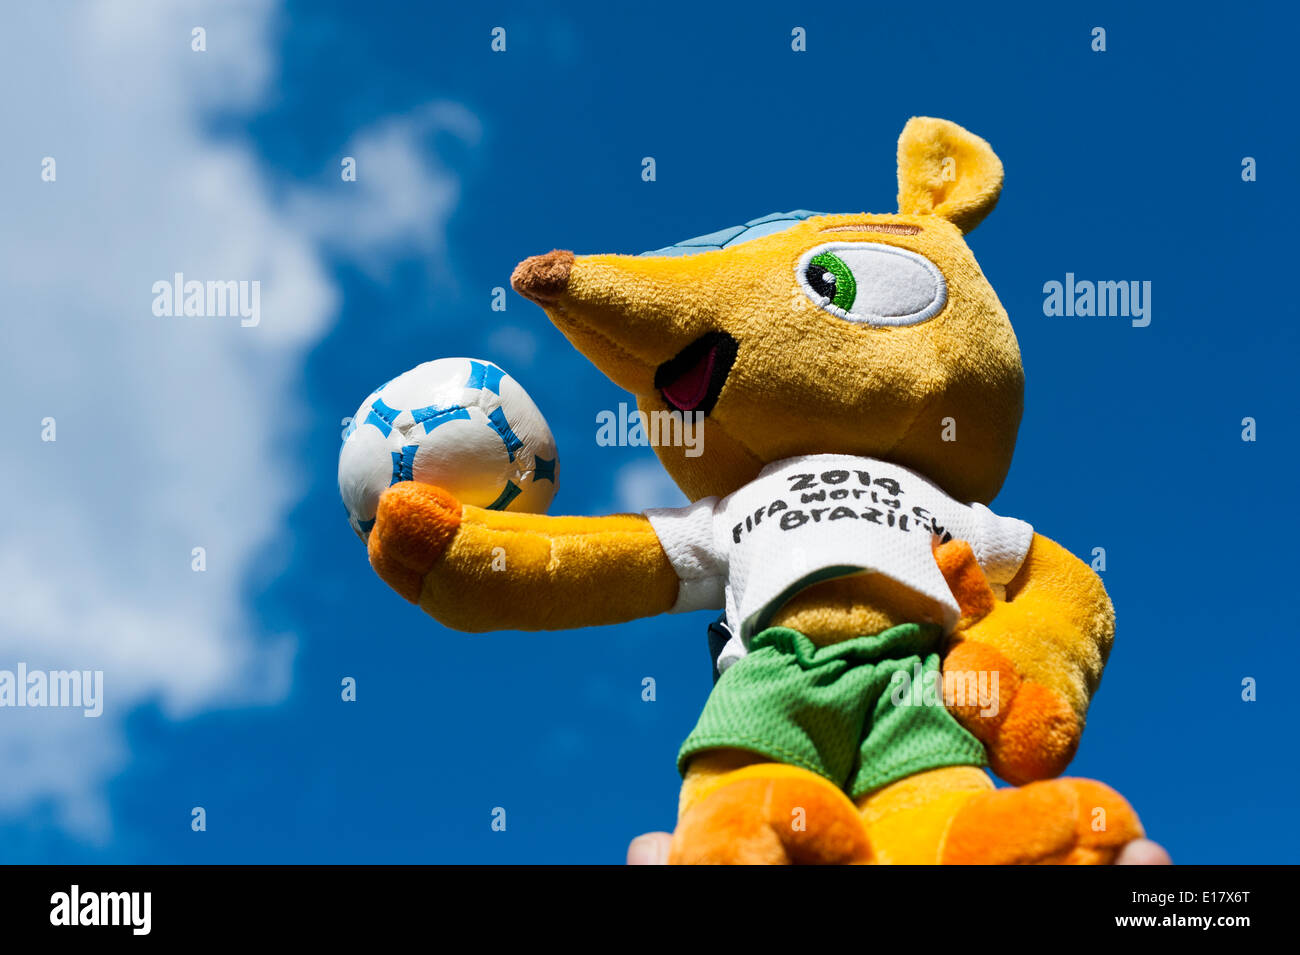 'Fuleco the Armadillo' Mascot for Brazil World Cup 2014. Stock Photo